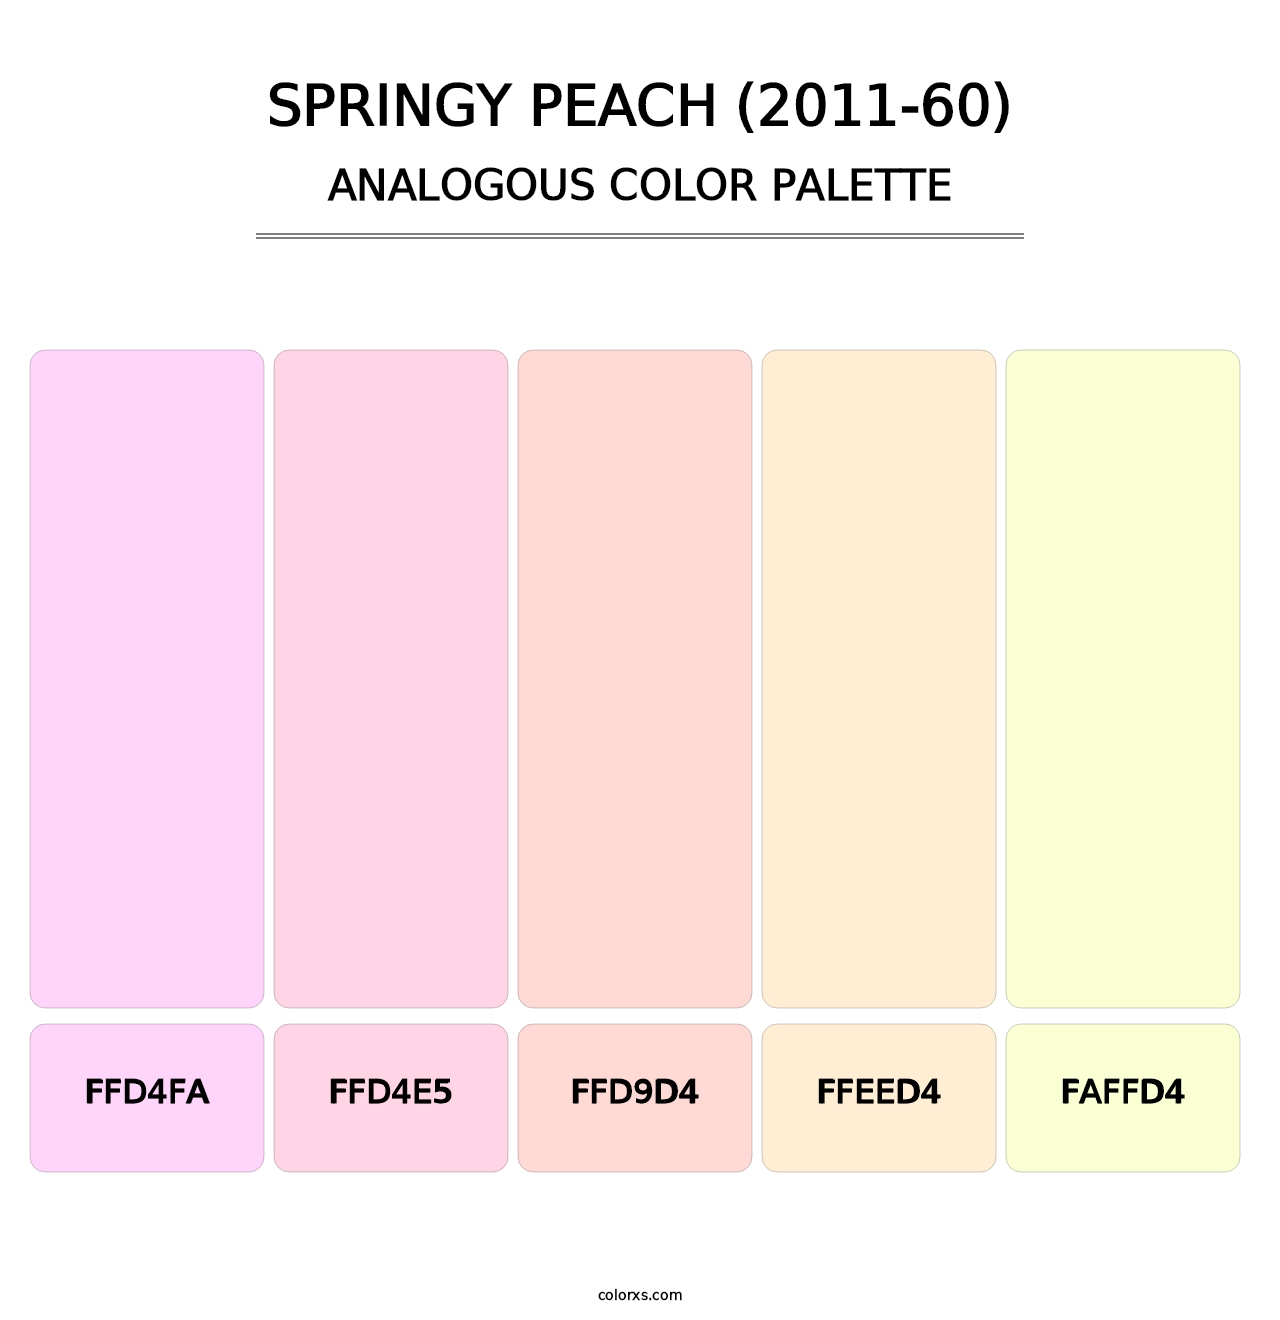 Springy Peach (2011-60) - Analogous Color Palette